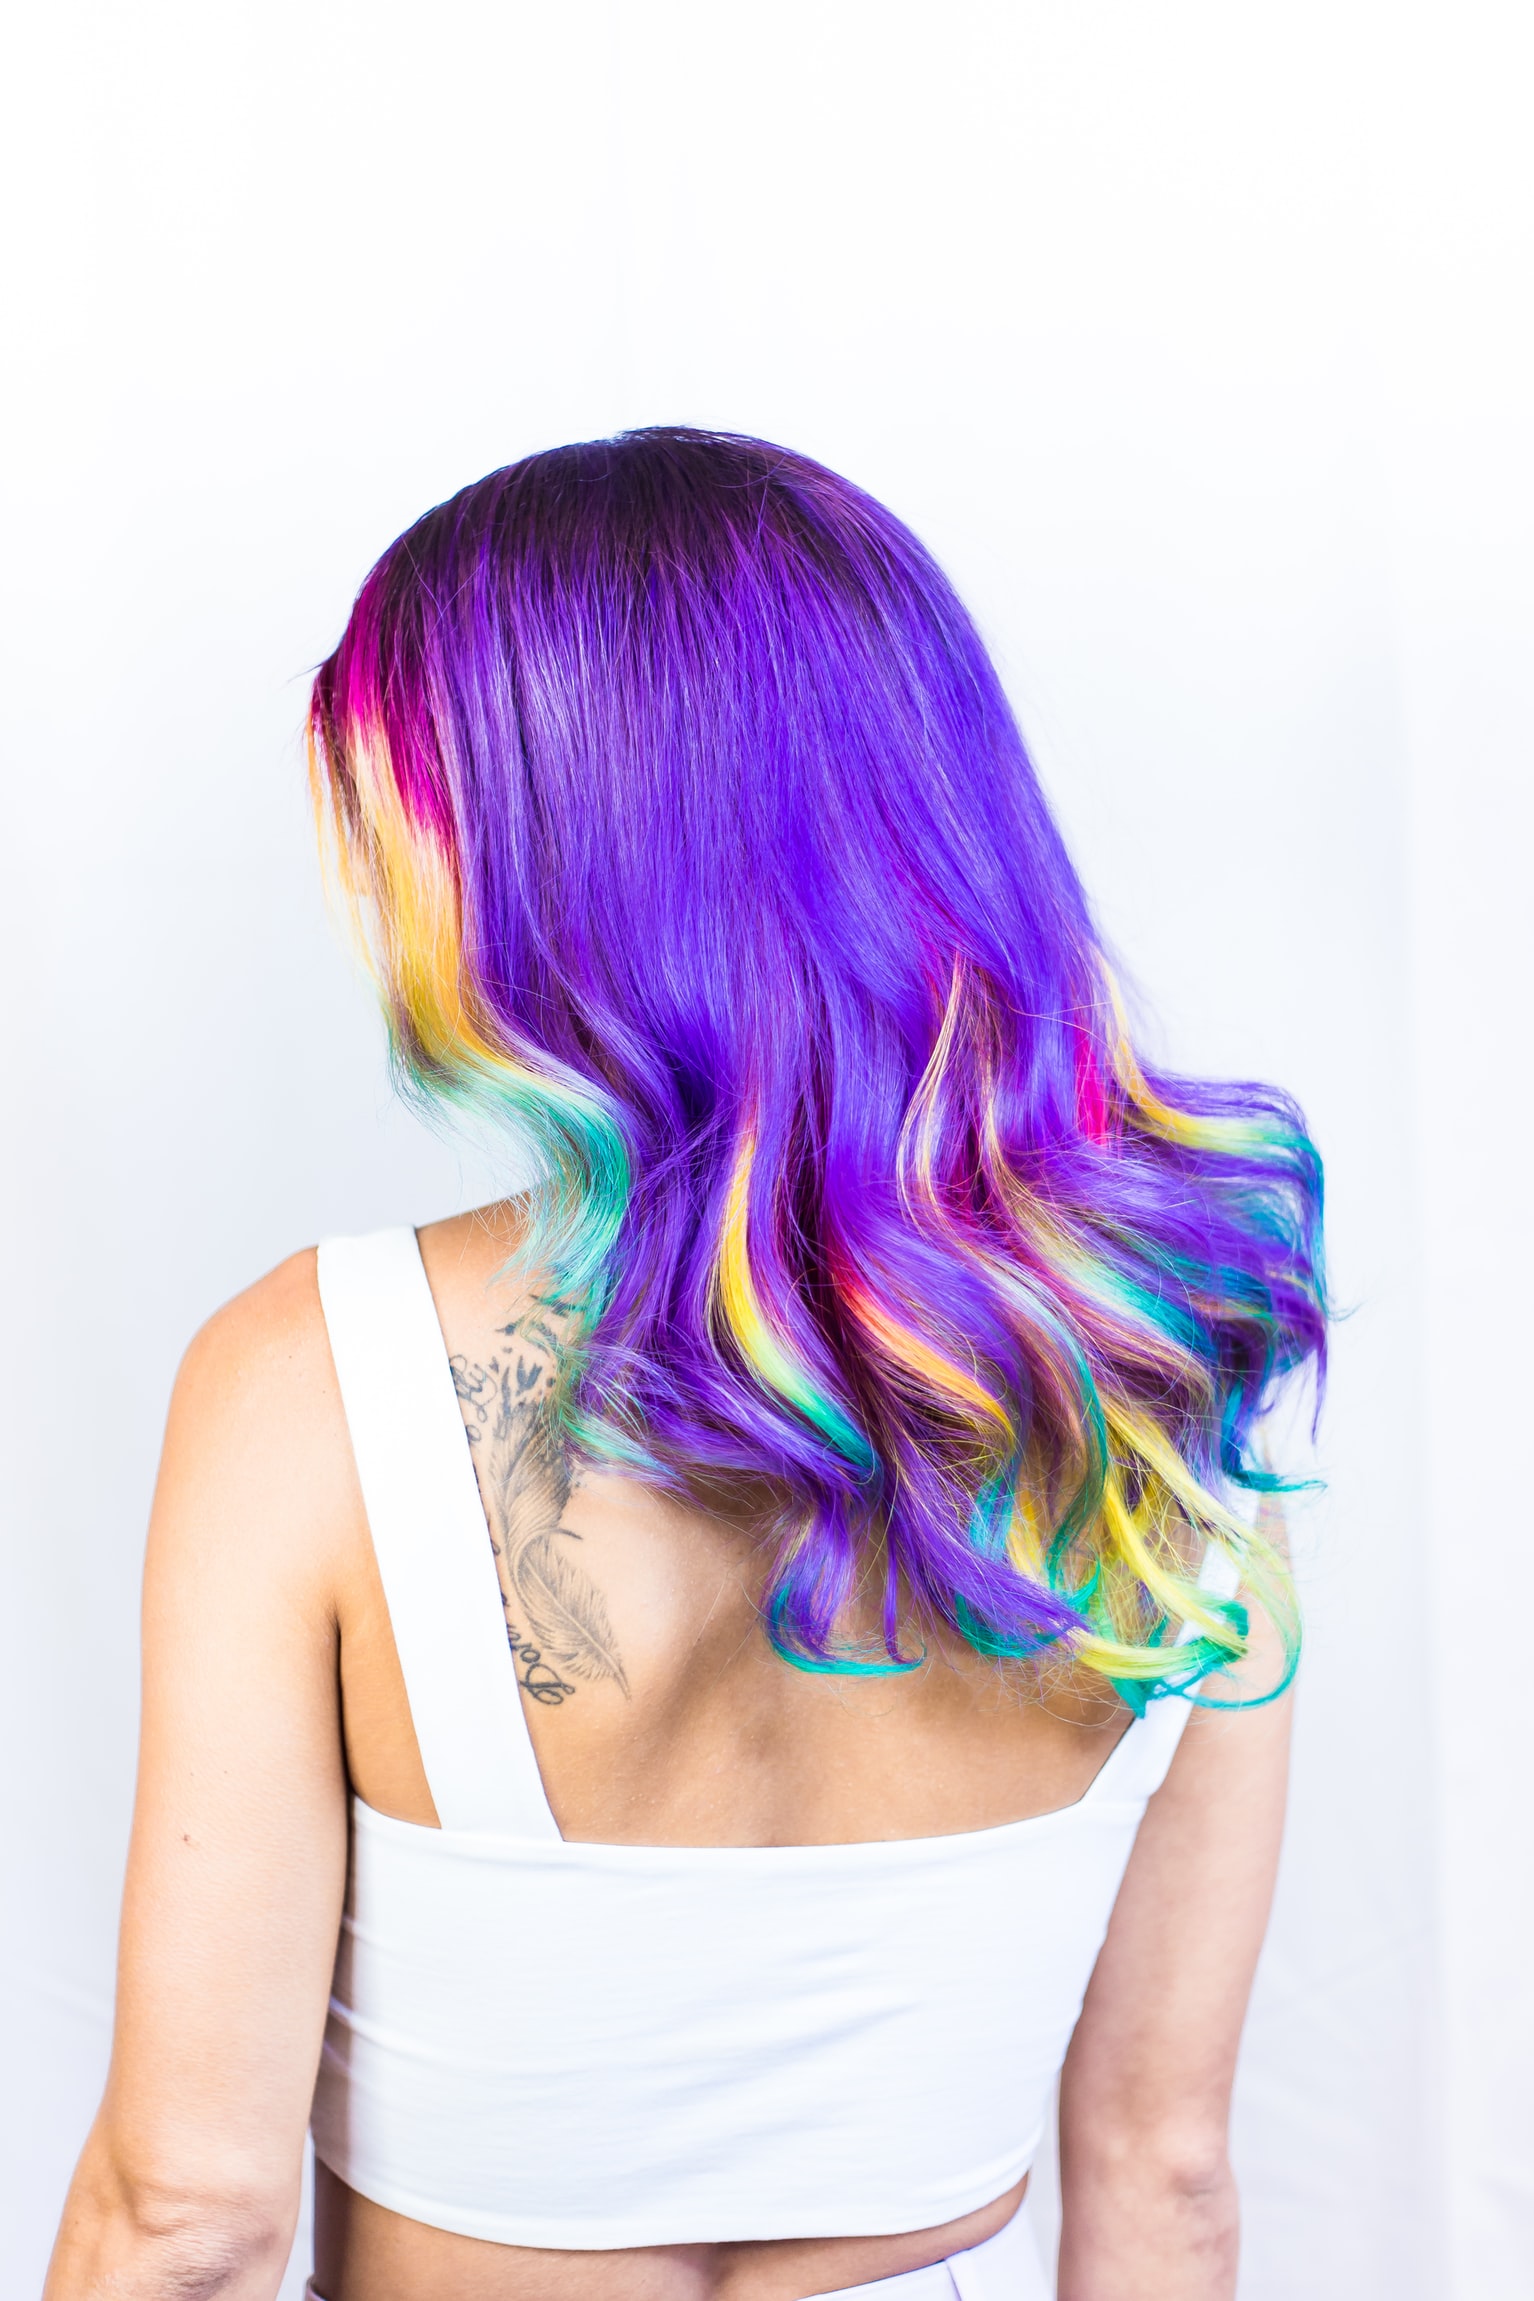 Způsoby, jak nosit pastelové barvy na vlasy